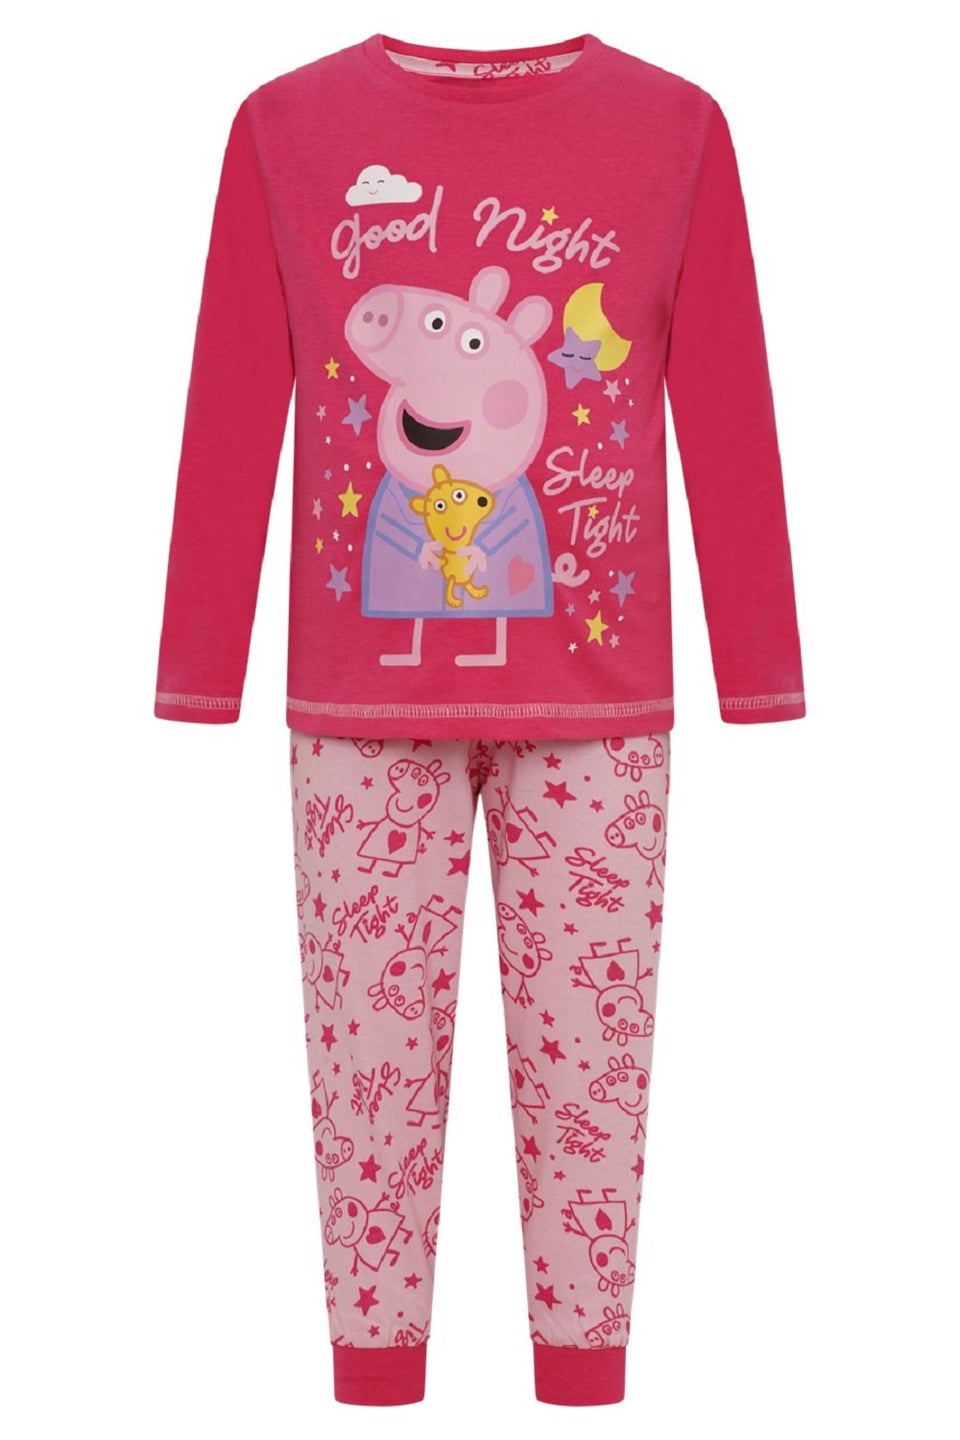 Детский пижамный комплект Brand Threads со Peppa Pig спокойной ночи миюки